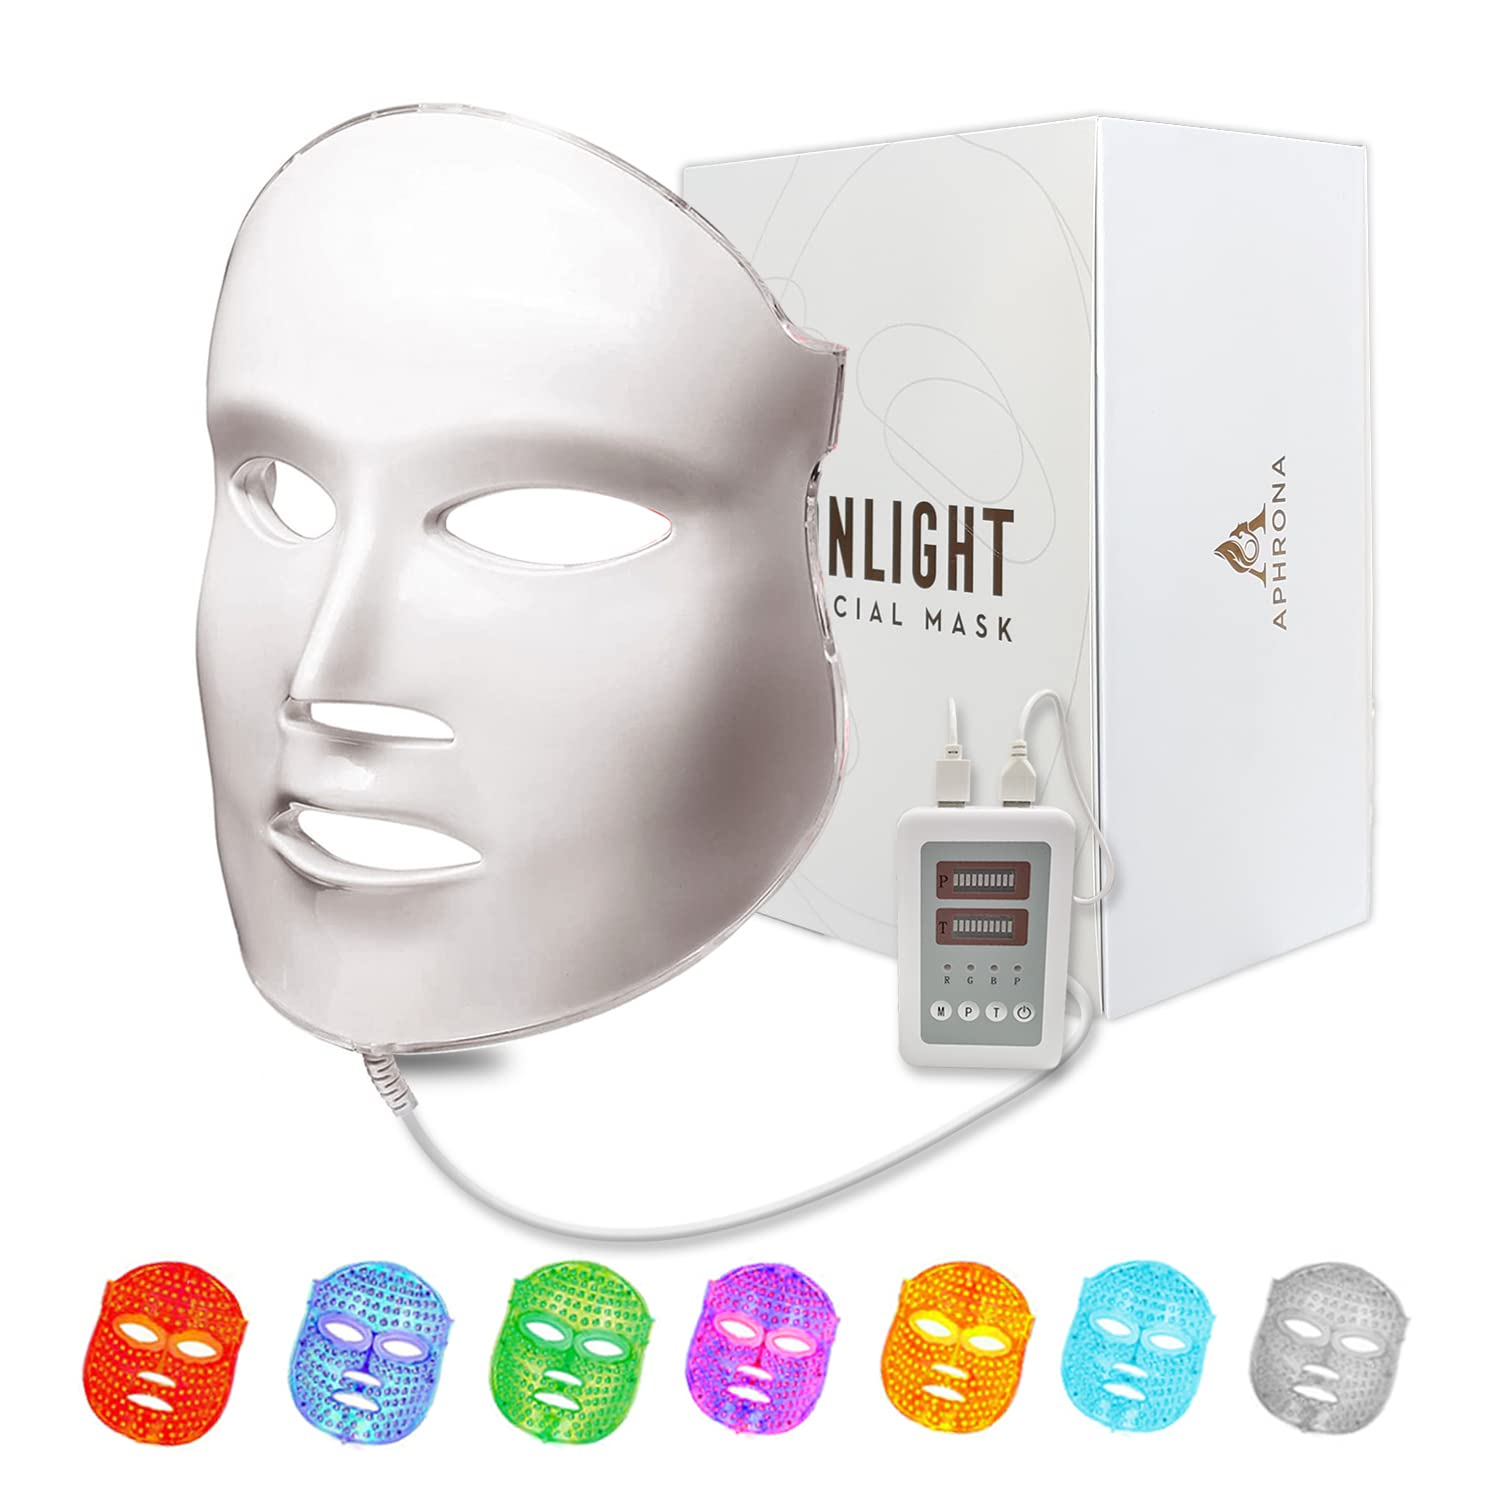 Aphrona FDA cleared LED Facial Skin Care Mask MOONLIGHT PRO 7 Color Treatment Photon Mask (White)